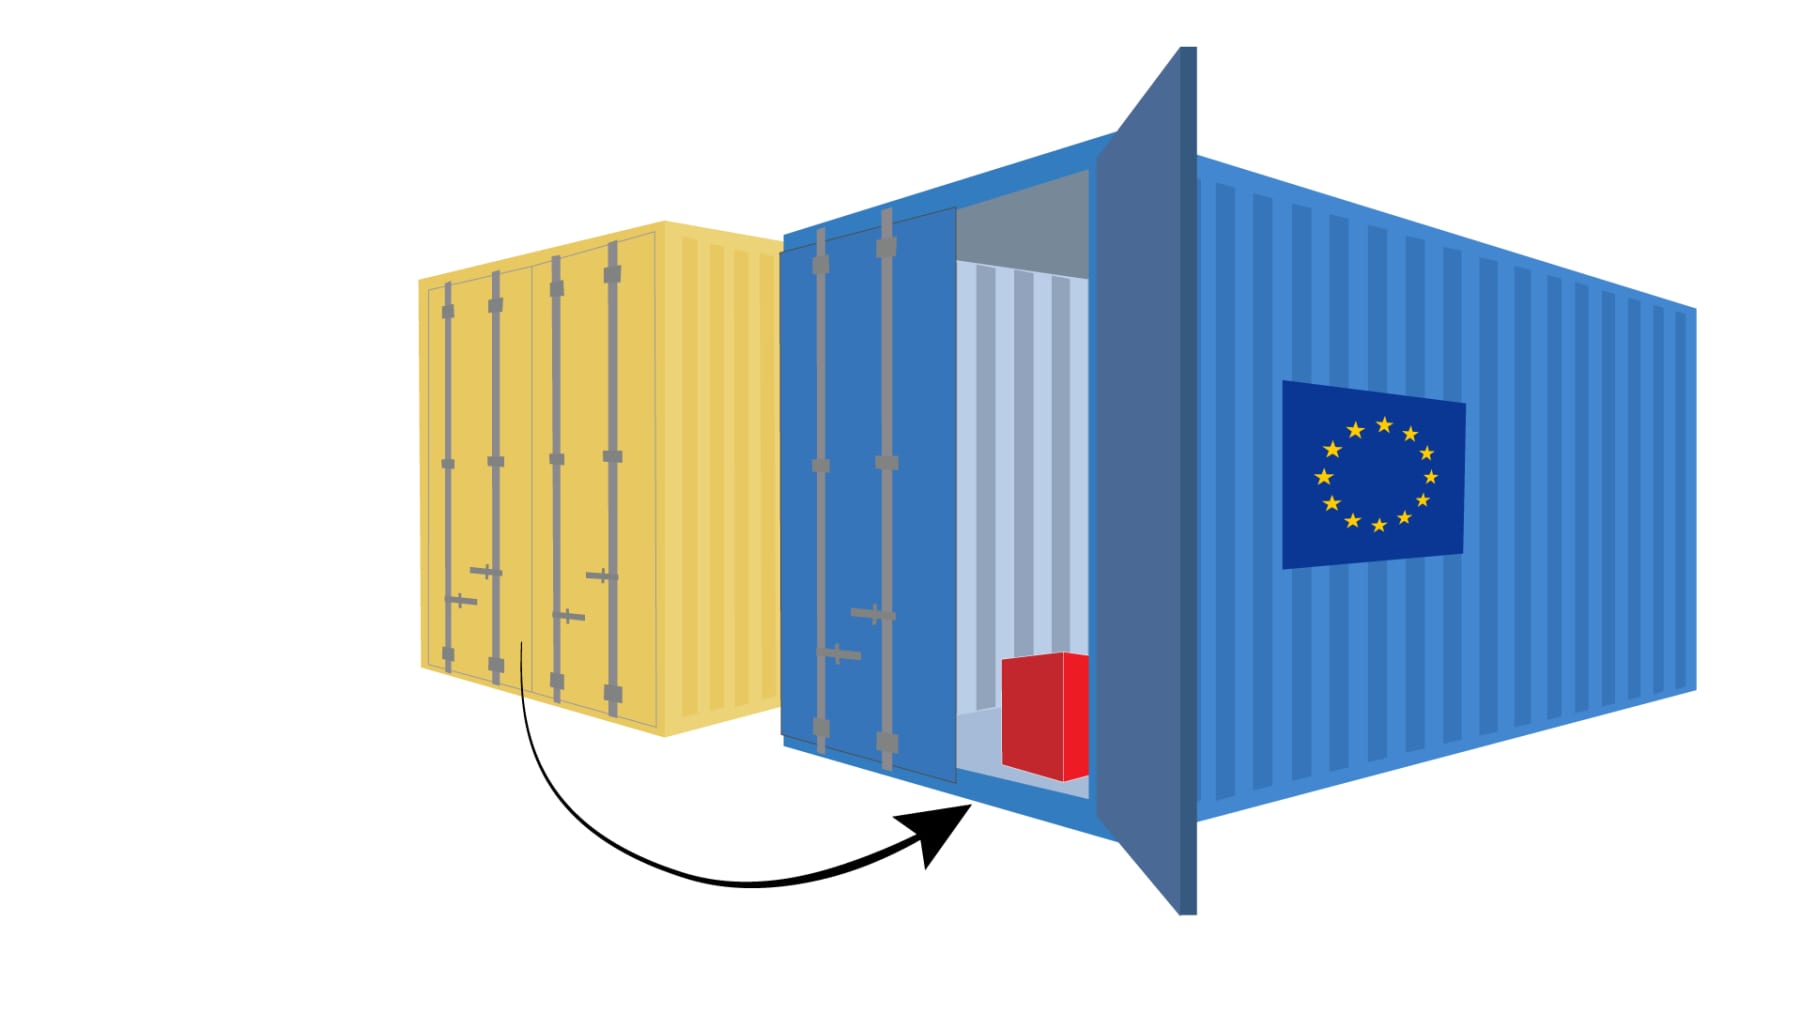 Piirros: Kaksi konttia vierekkäin. vasemman puoleisessa kontissa ovat ovet kiinni. Siitä lähtee nuoli oikeanpuoleiseen konttiin, jossa on ovi auki. Sieltä näkyy punainen laatikko. Kontin kyljessä on EU-lippu.